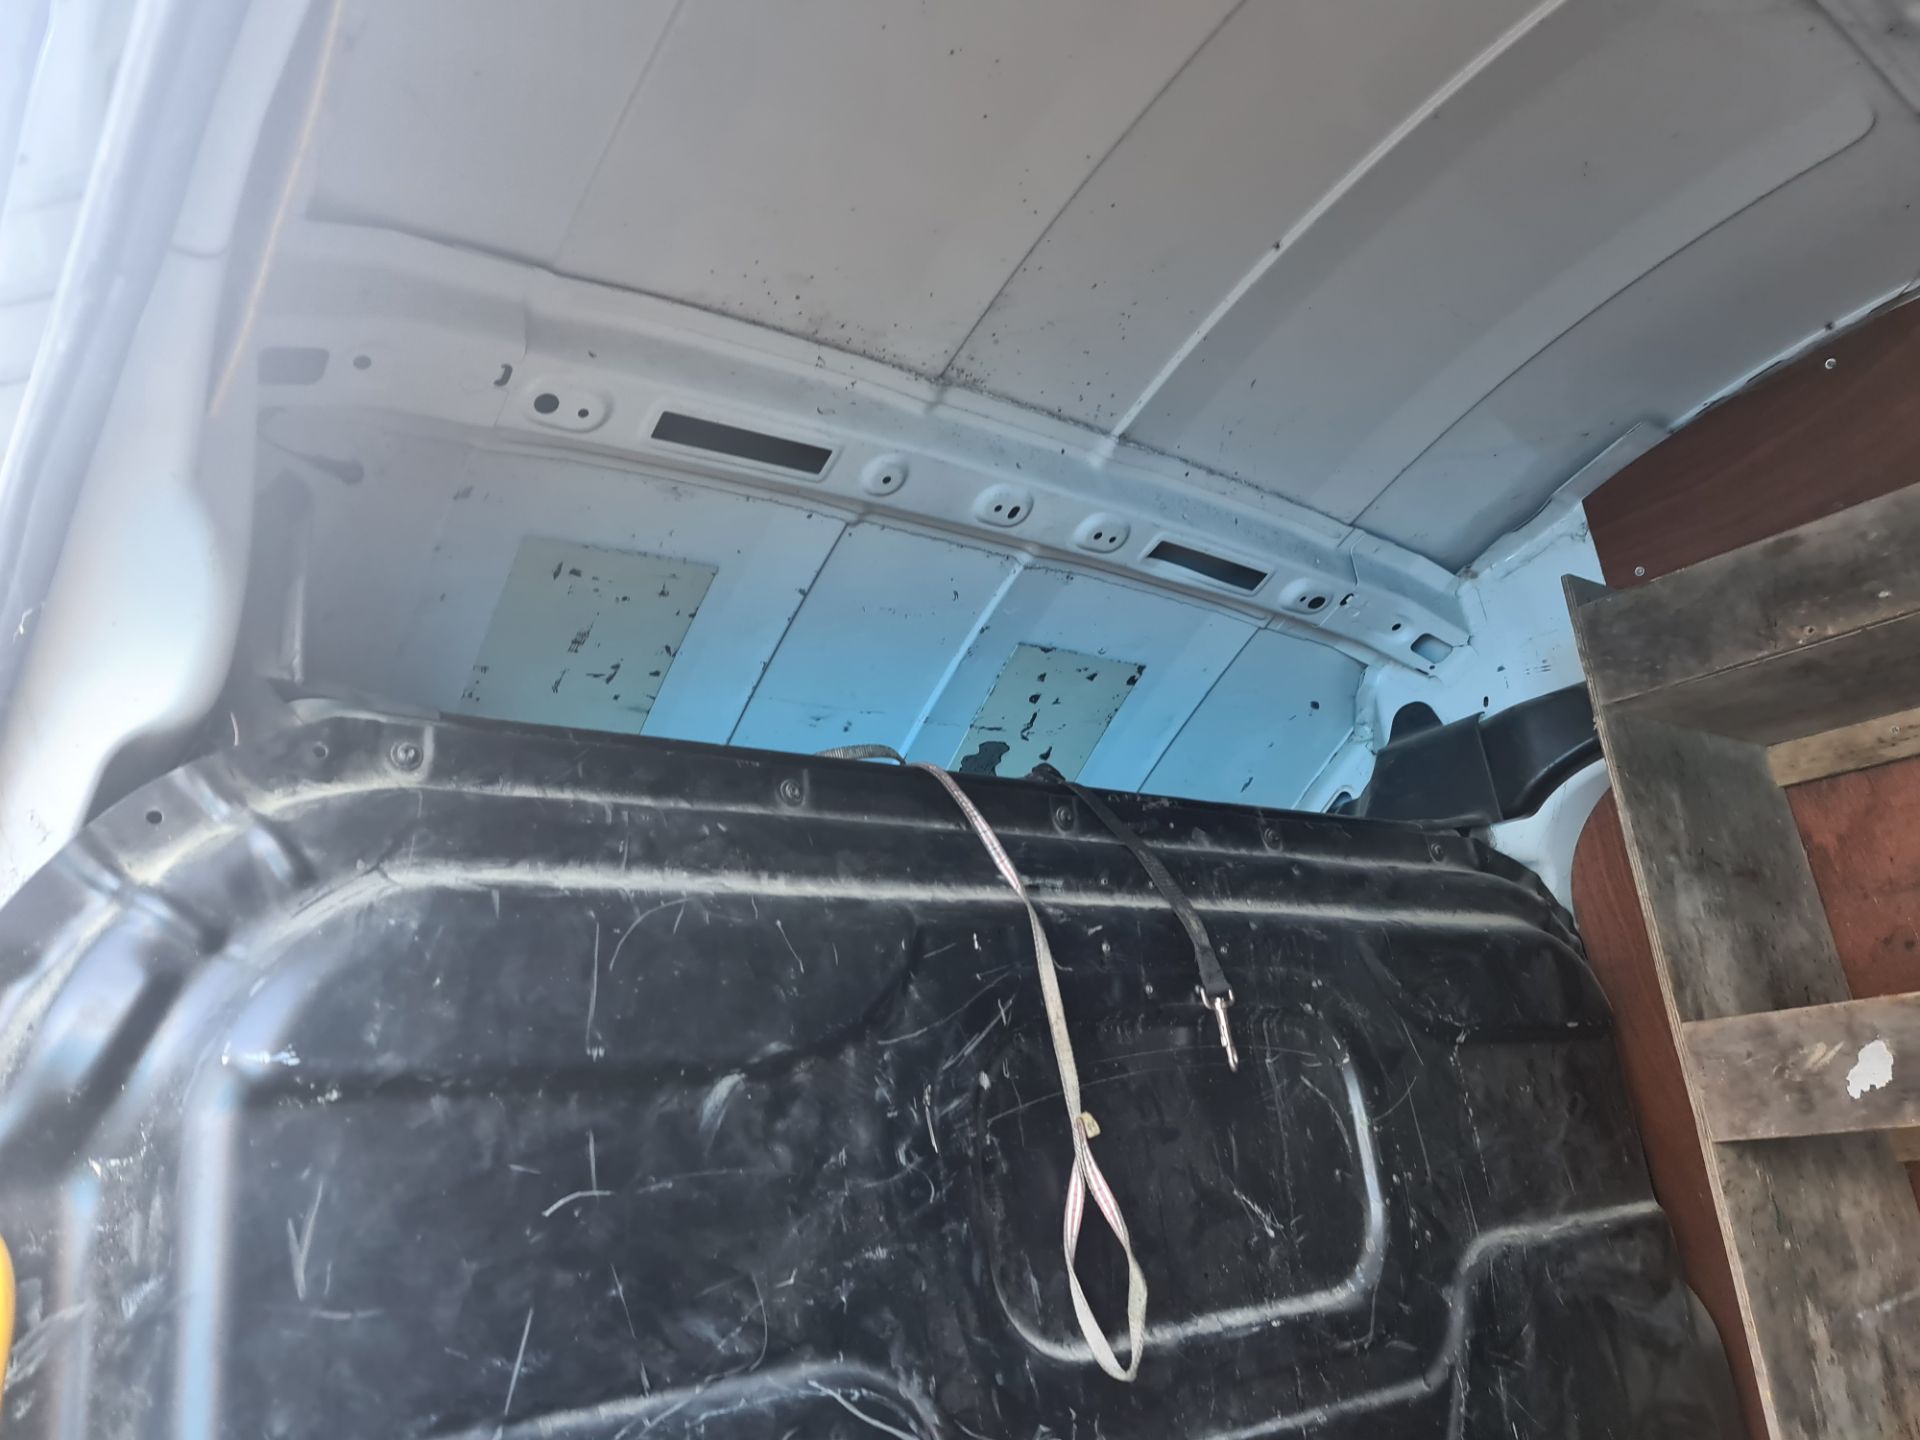 2018 Ford Transit 350 L4 H3 panel van - Image 61 of 61